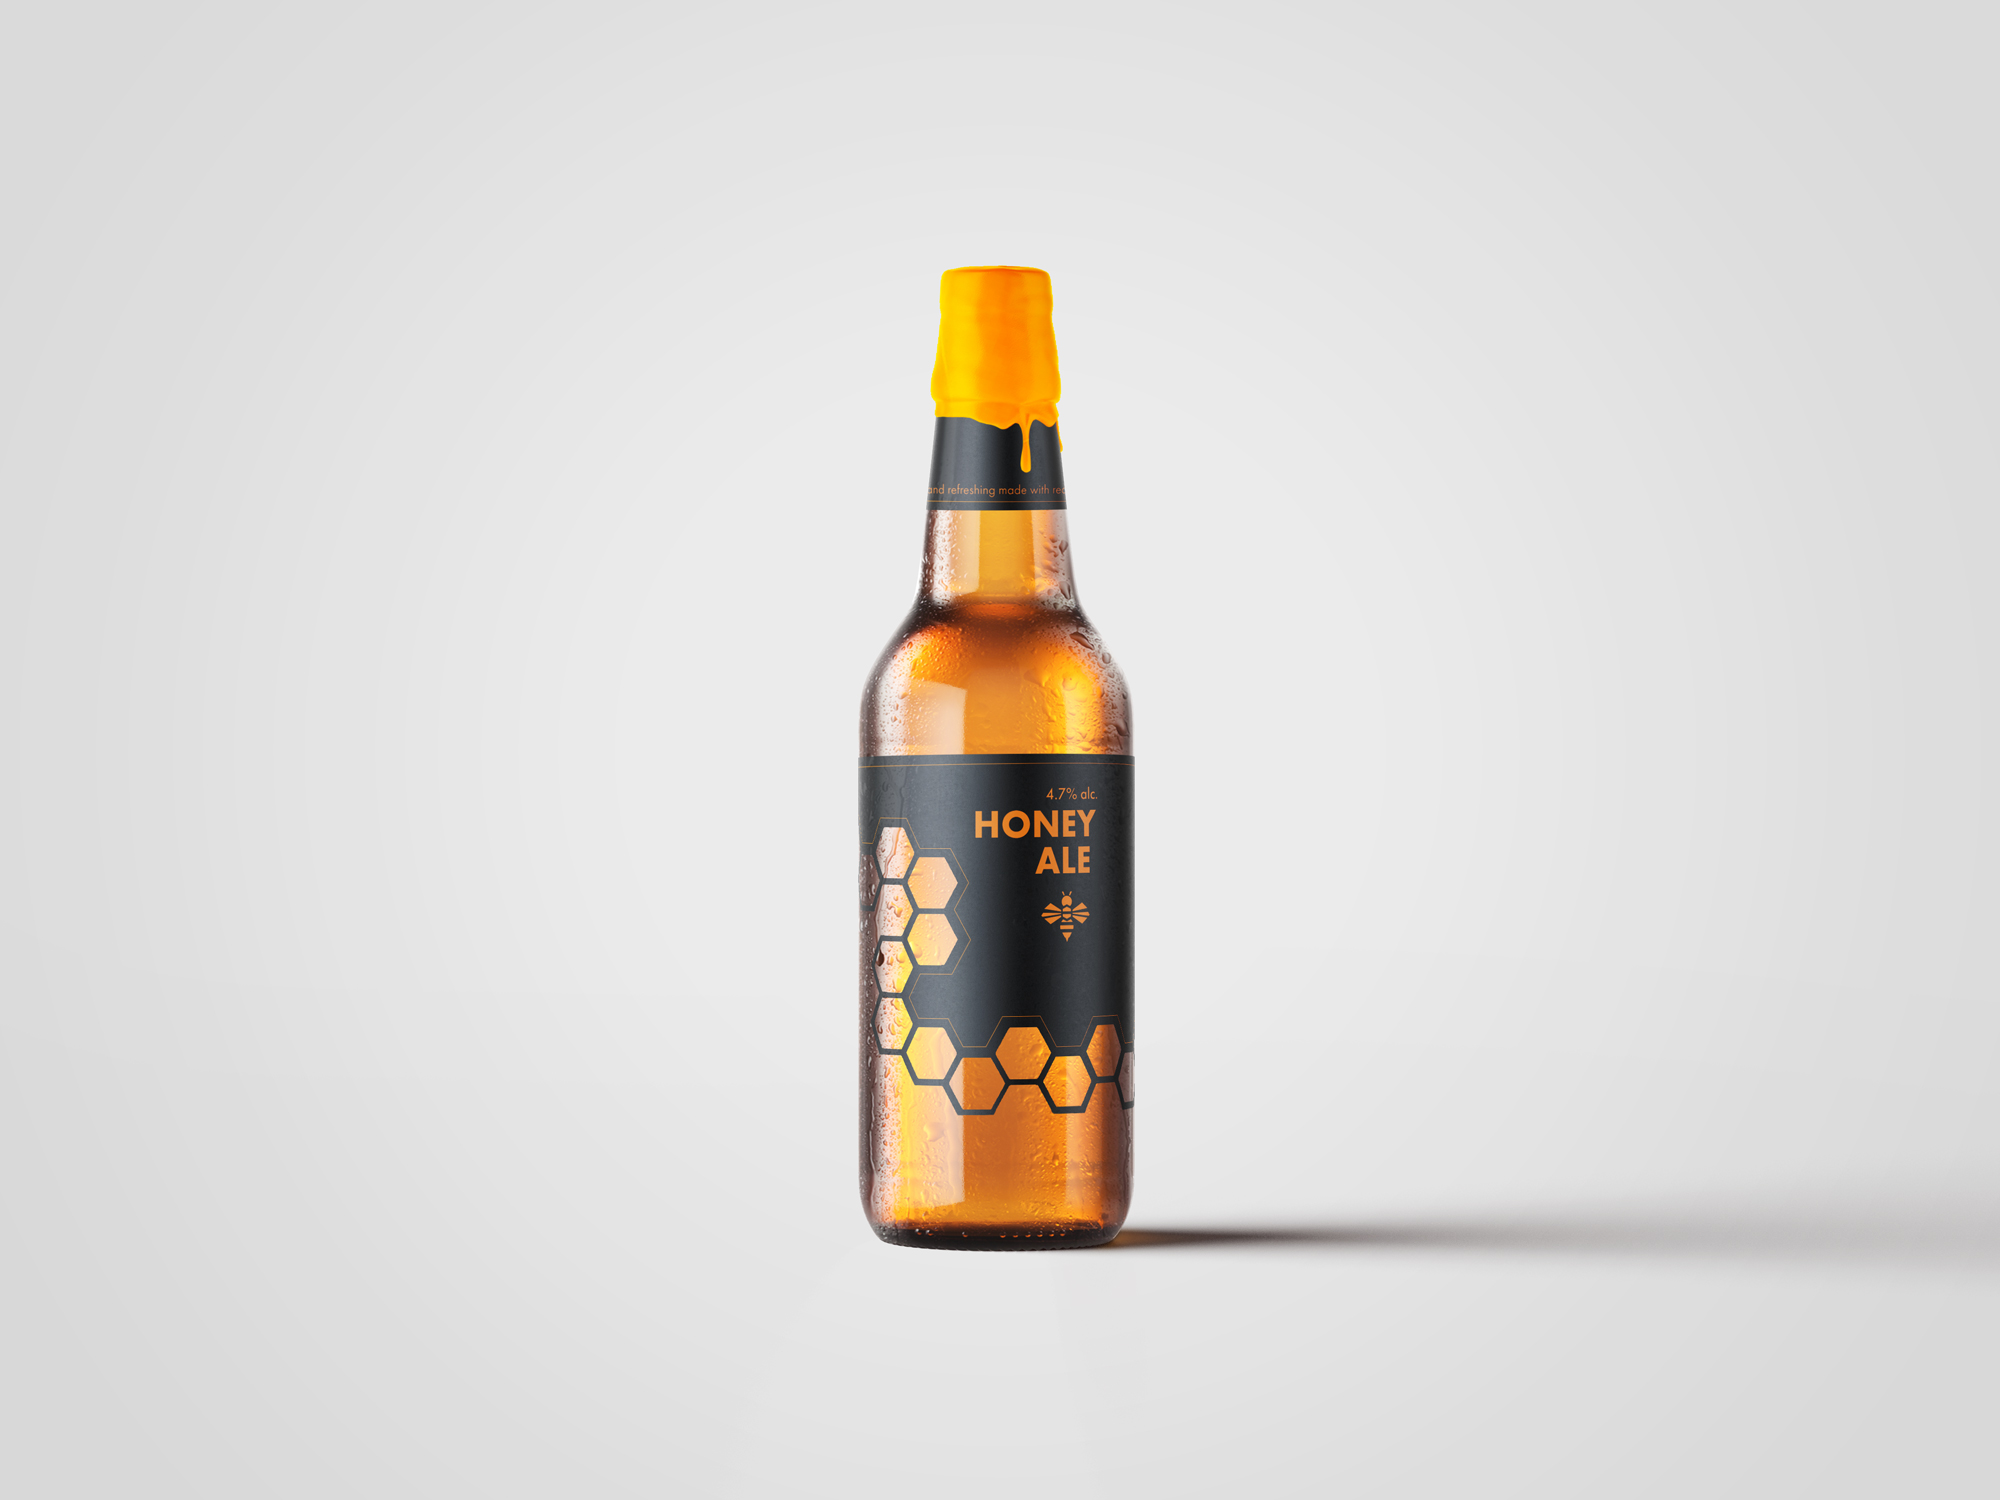 Honey ale beer bottle label design by Johan Wibrink